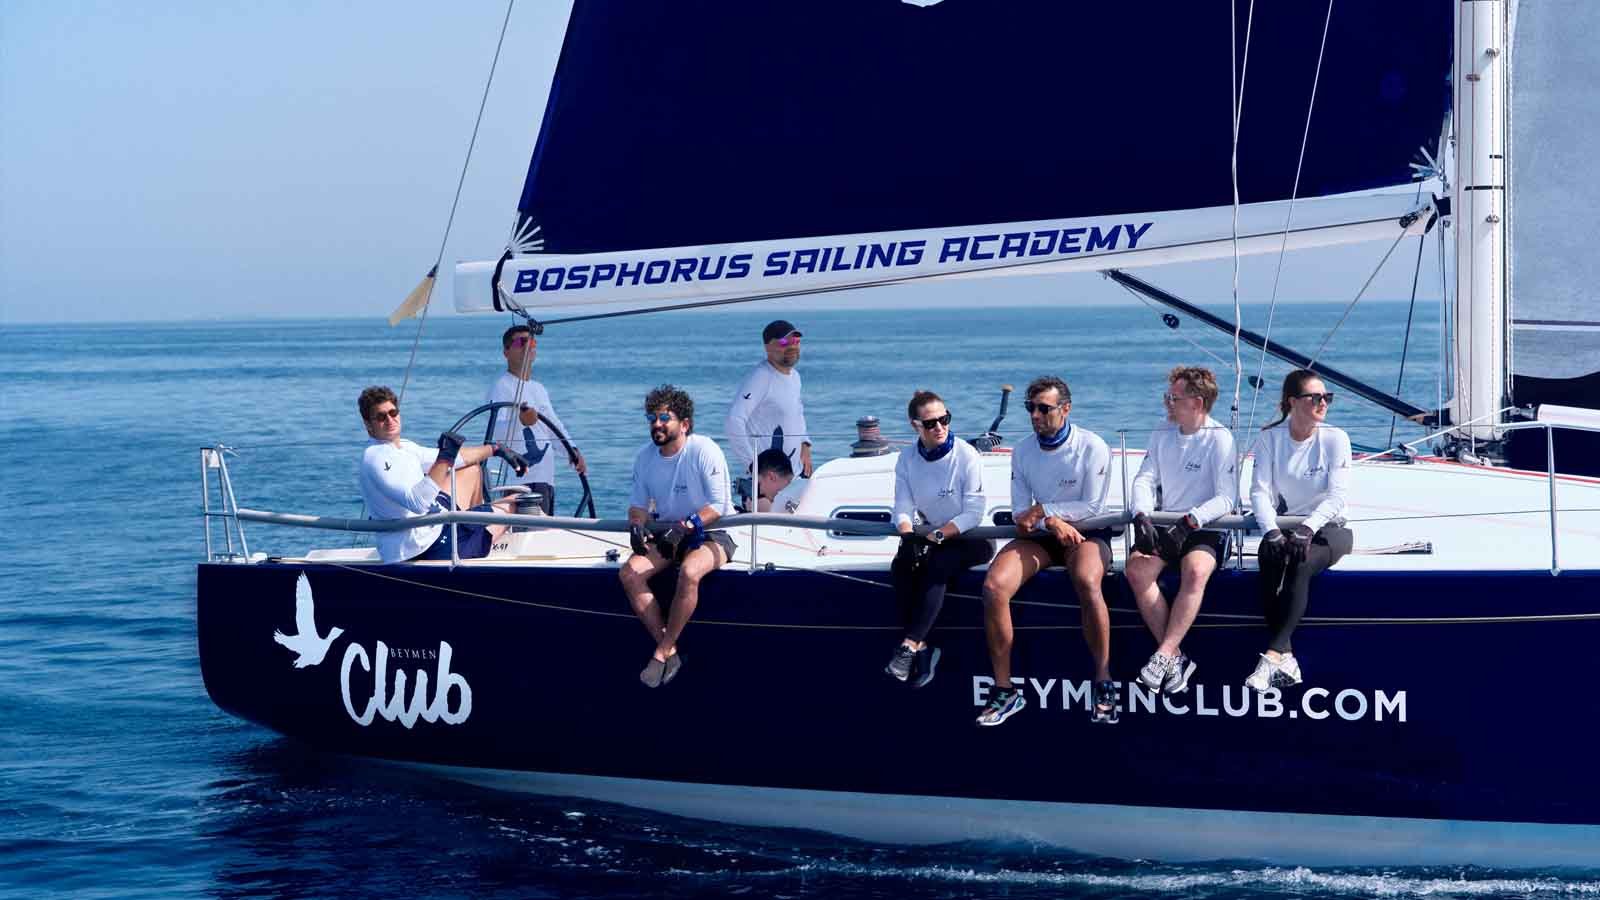 Bosphorus Sailing Academy Ile Ortaklık Beymen Club Yelken Takımı